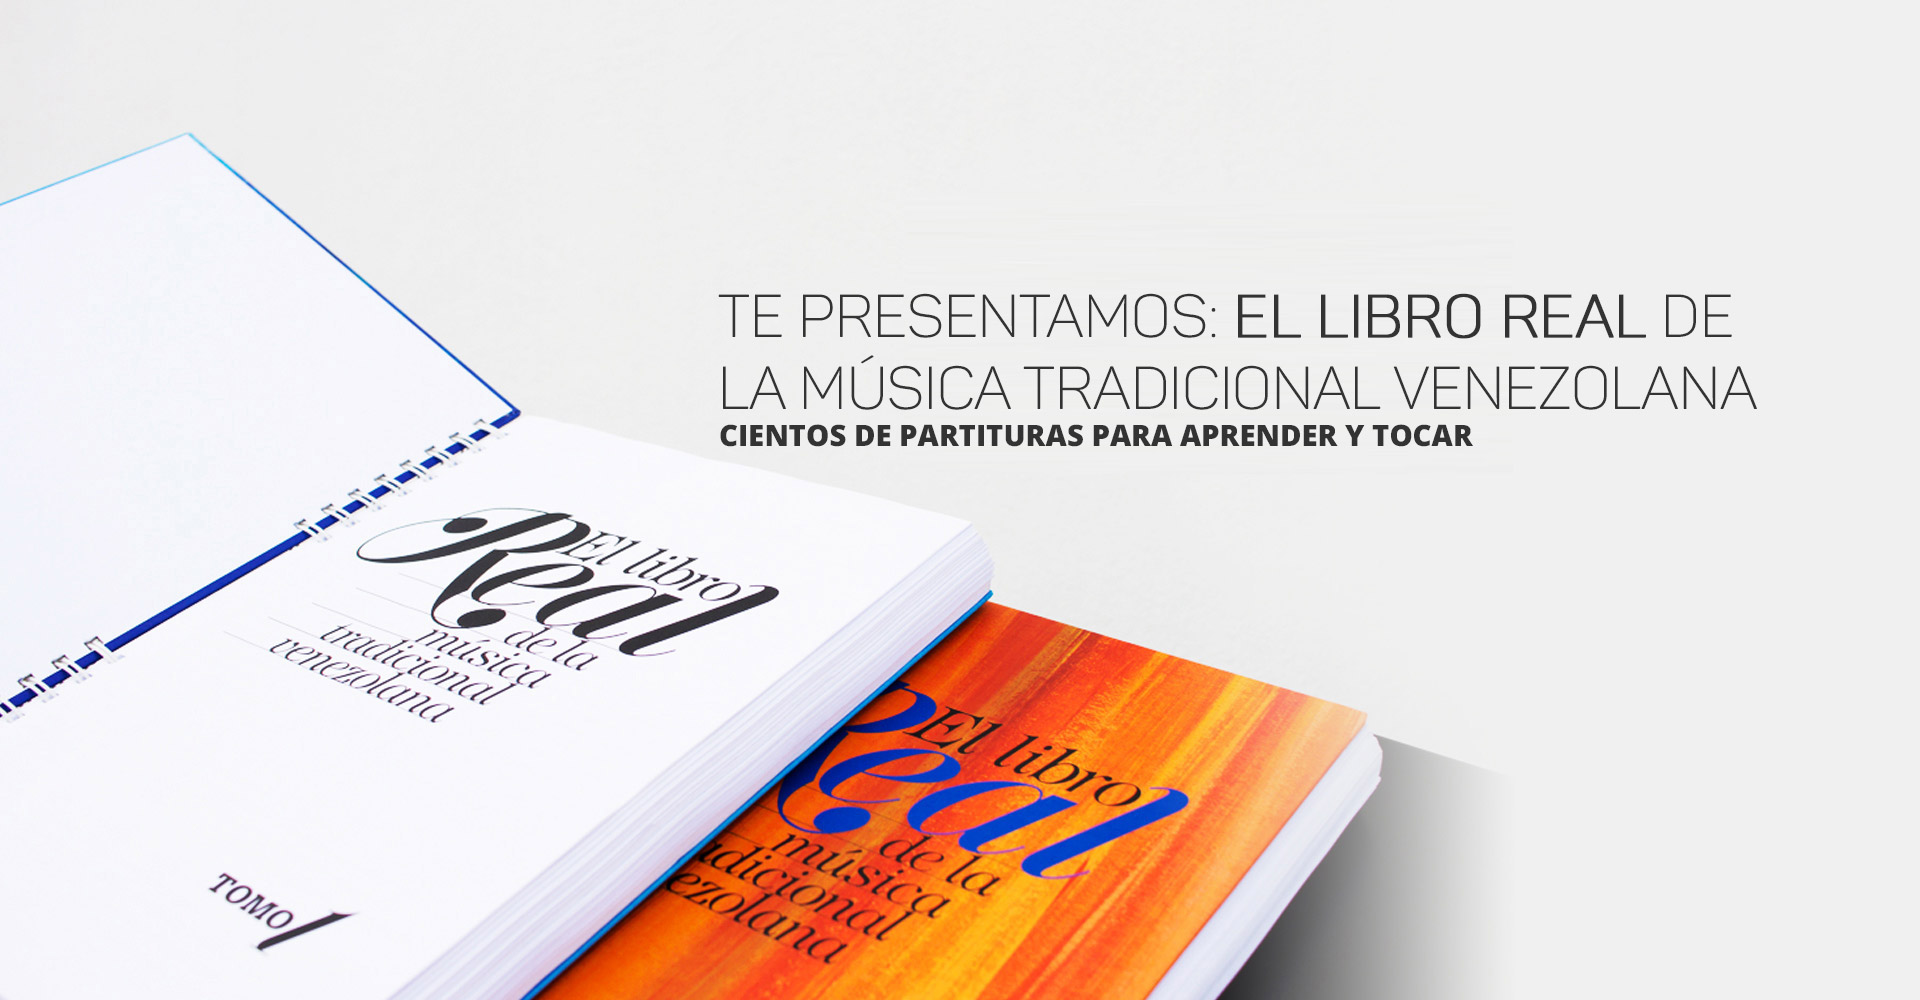  El libro real Te presentamos el Libro Real de la Música Tradicional Venezolana